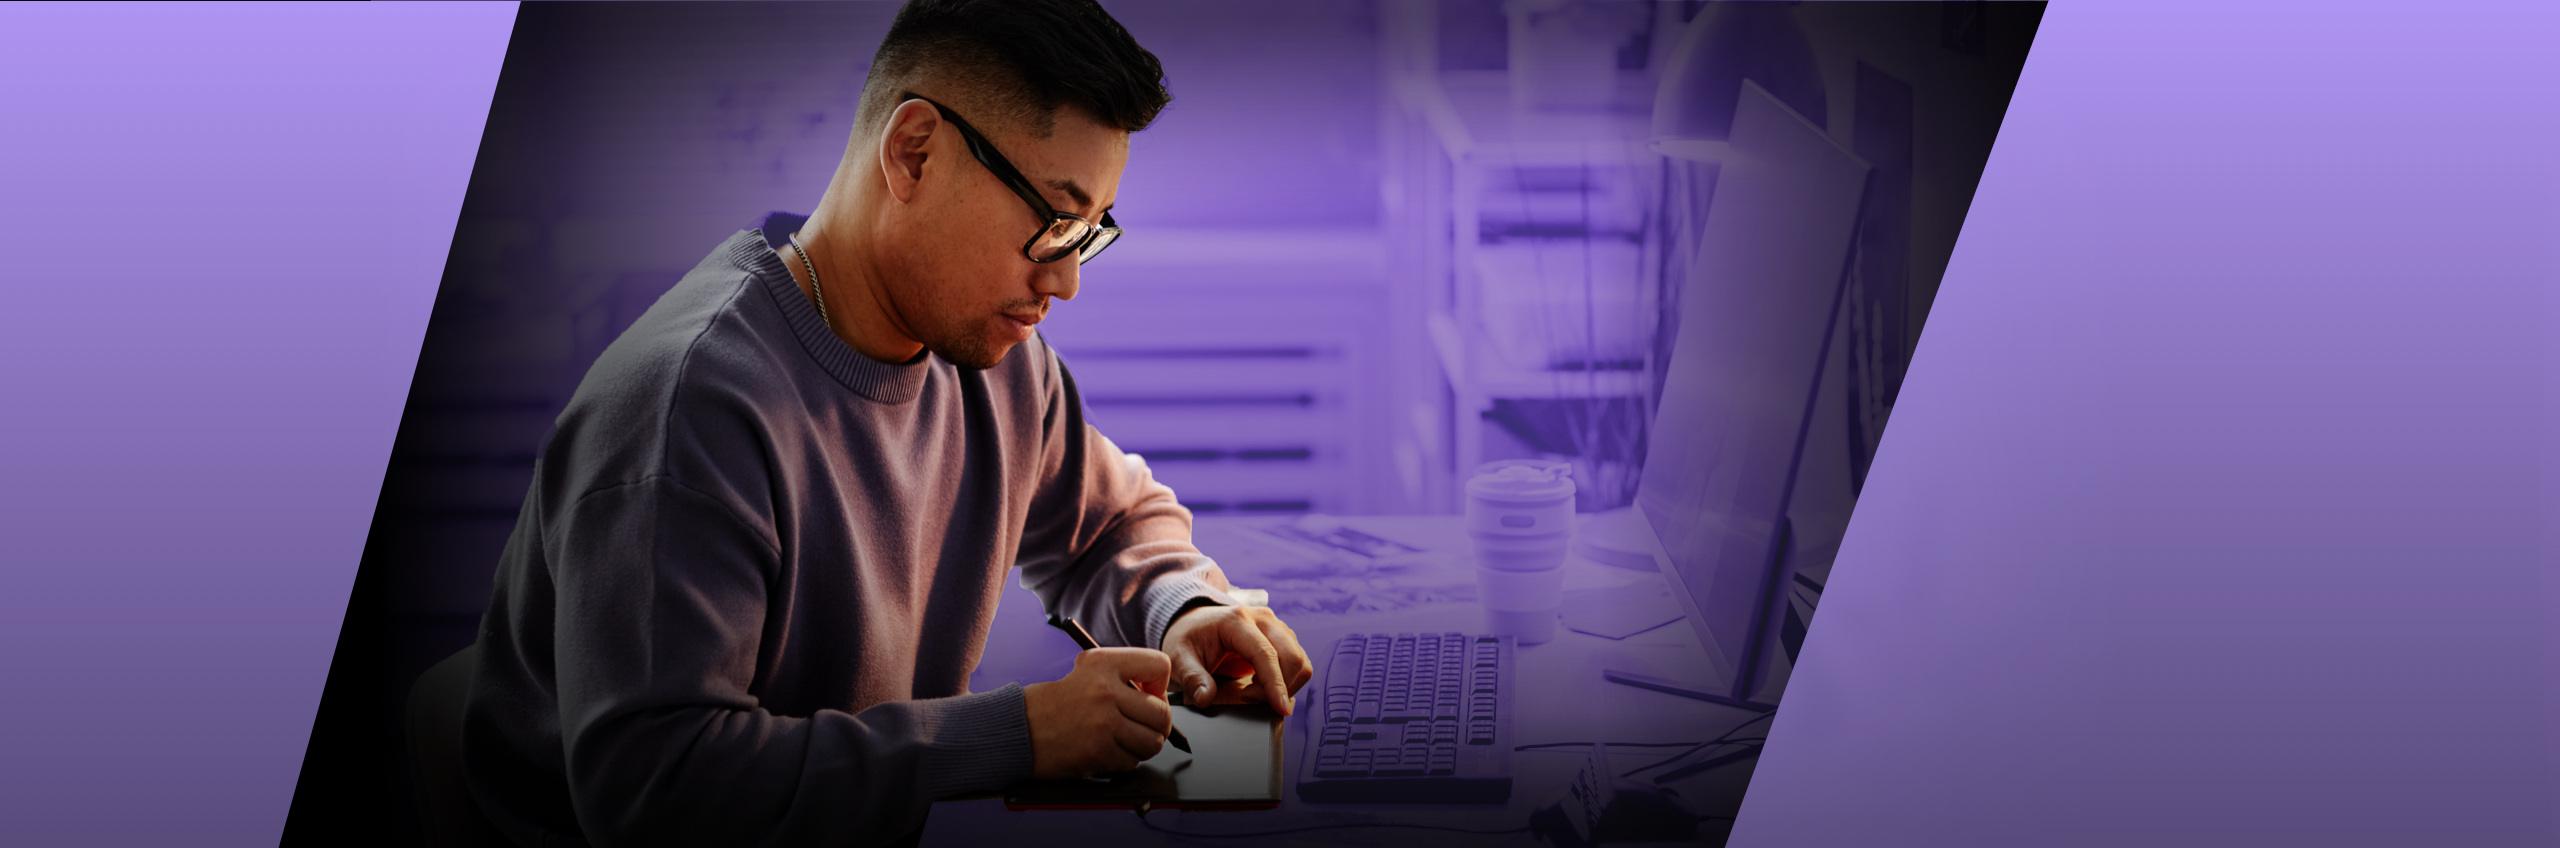 Un joven trabaja con una tableta gráfica en el escritorio.